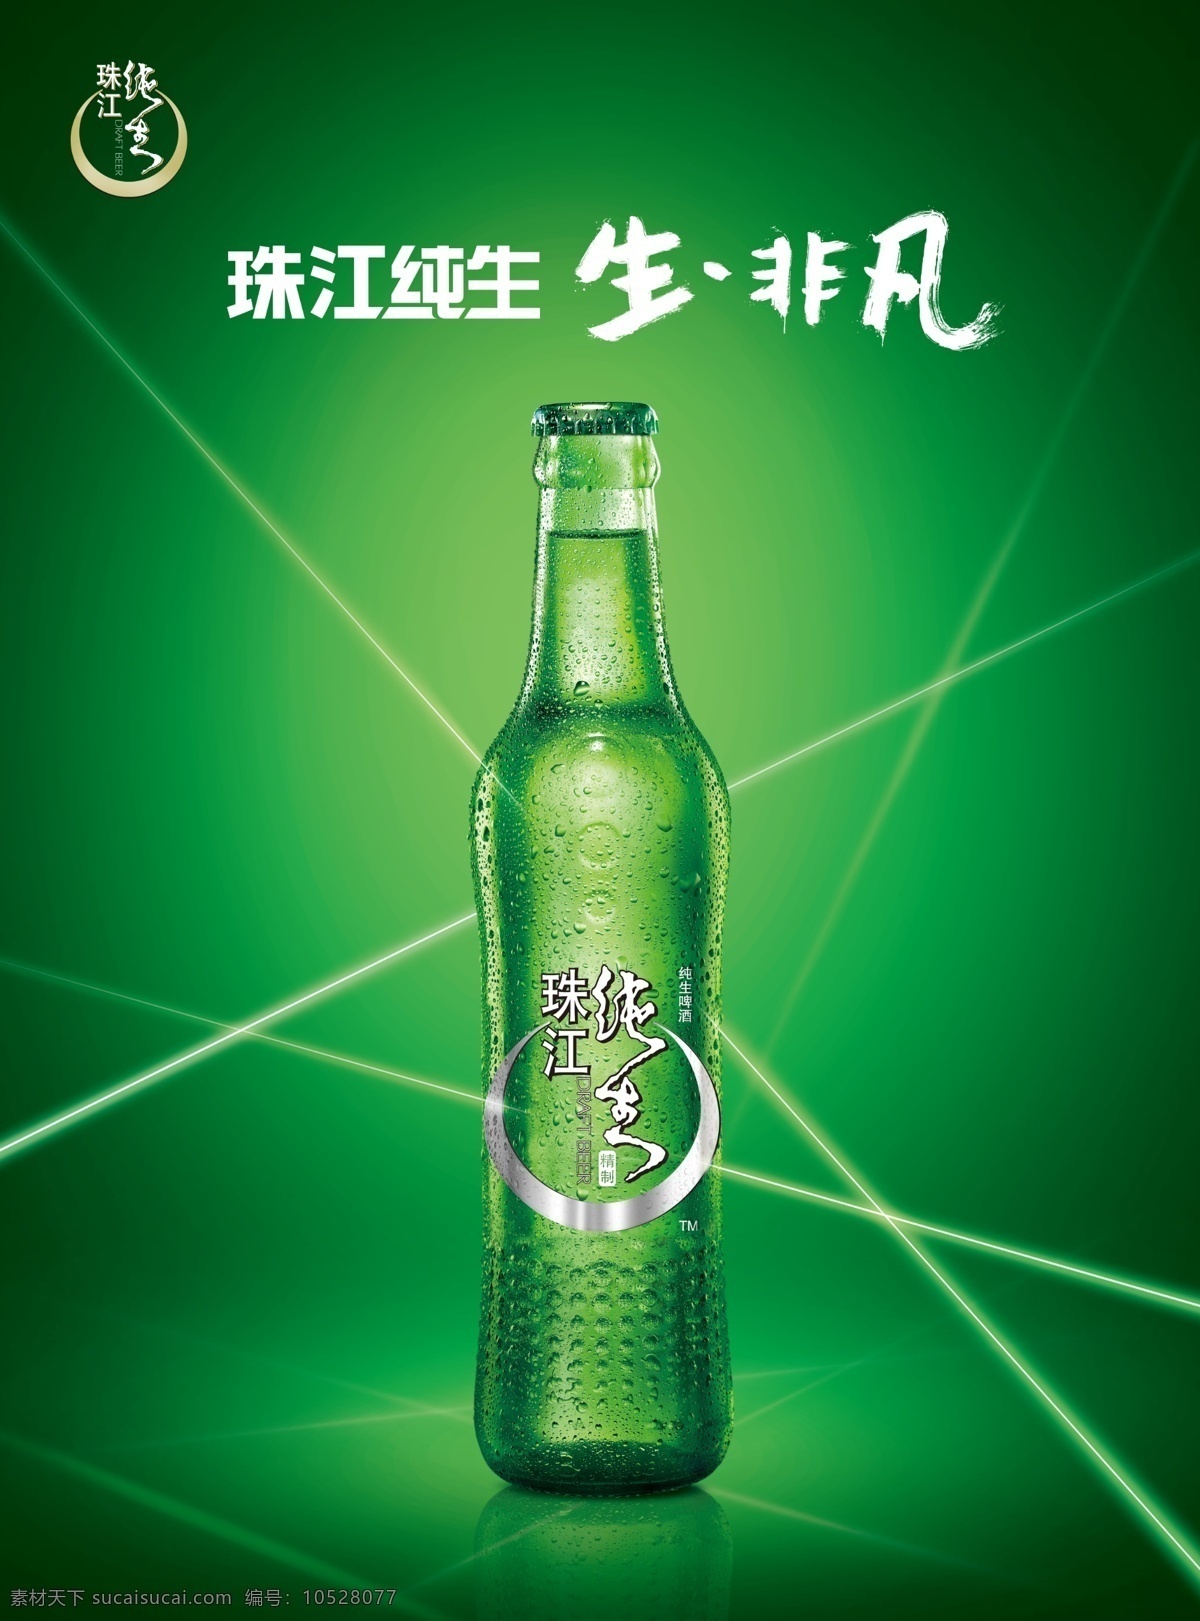 珠江 纯生 非凡 啤酒图片 啤酒 标志